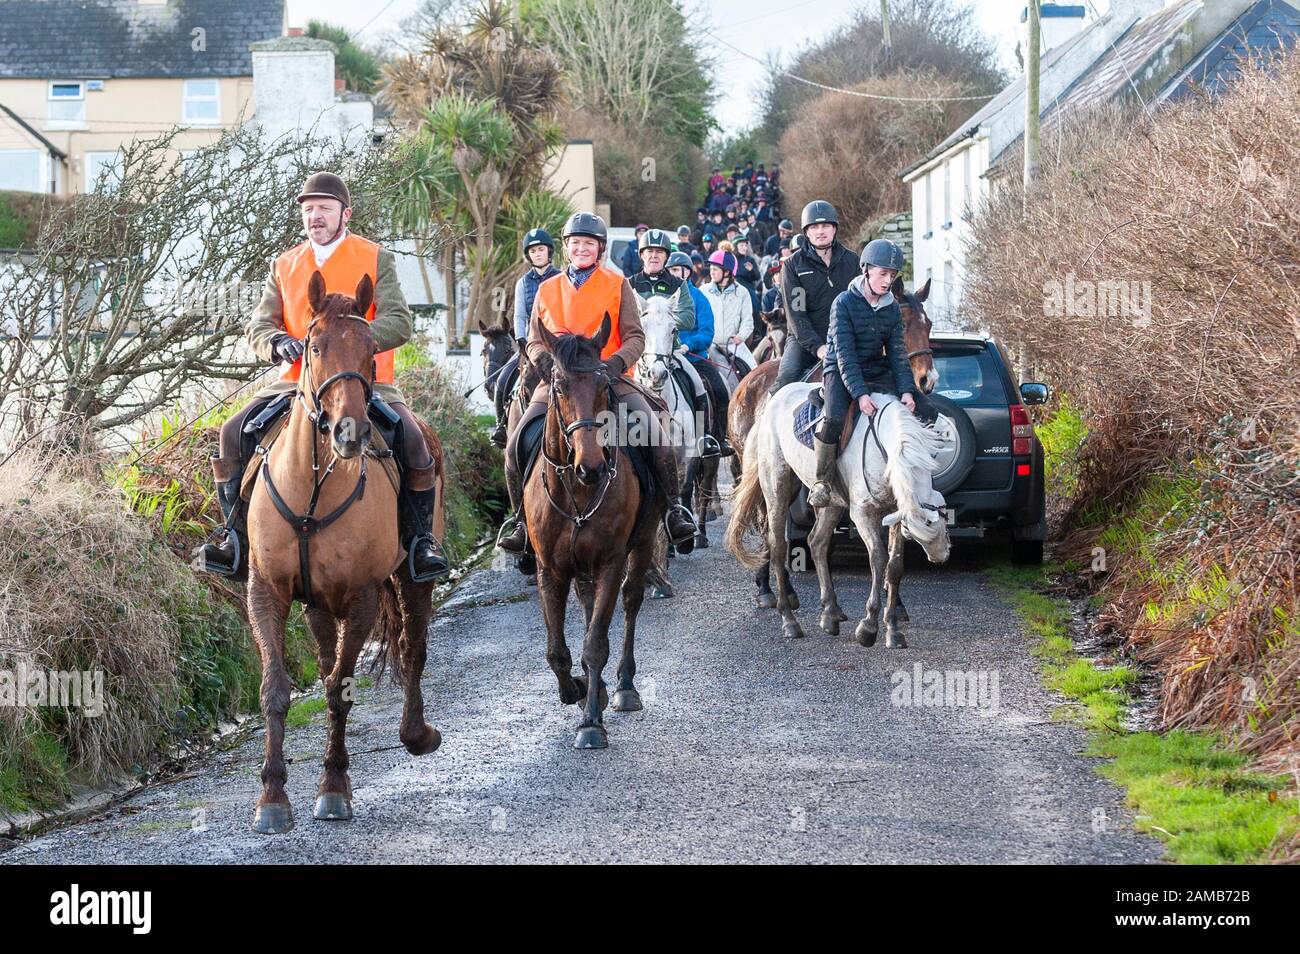 Butlerstown, West Cork, Irlanda. 12 de enero de 2020. El paseo anual Carberry Hunt Butlerstown Fun Ride tuvo lugar hoy en día con cientos de caballos y jinetes participando. Los caballos se acercan a la playa de Broadstrand. Crédito: Andy Gibson/Alamy Live News Foto de stock